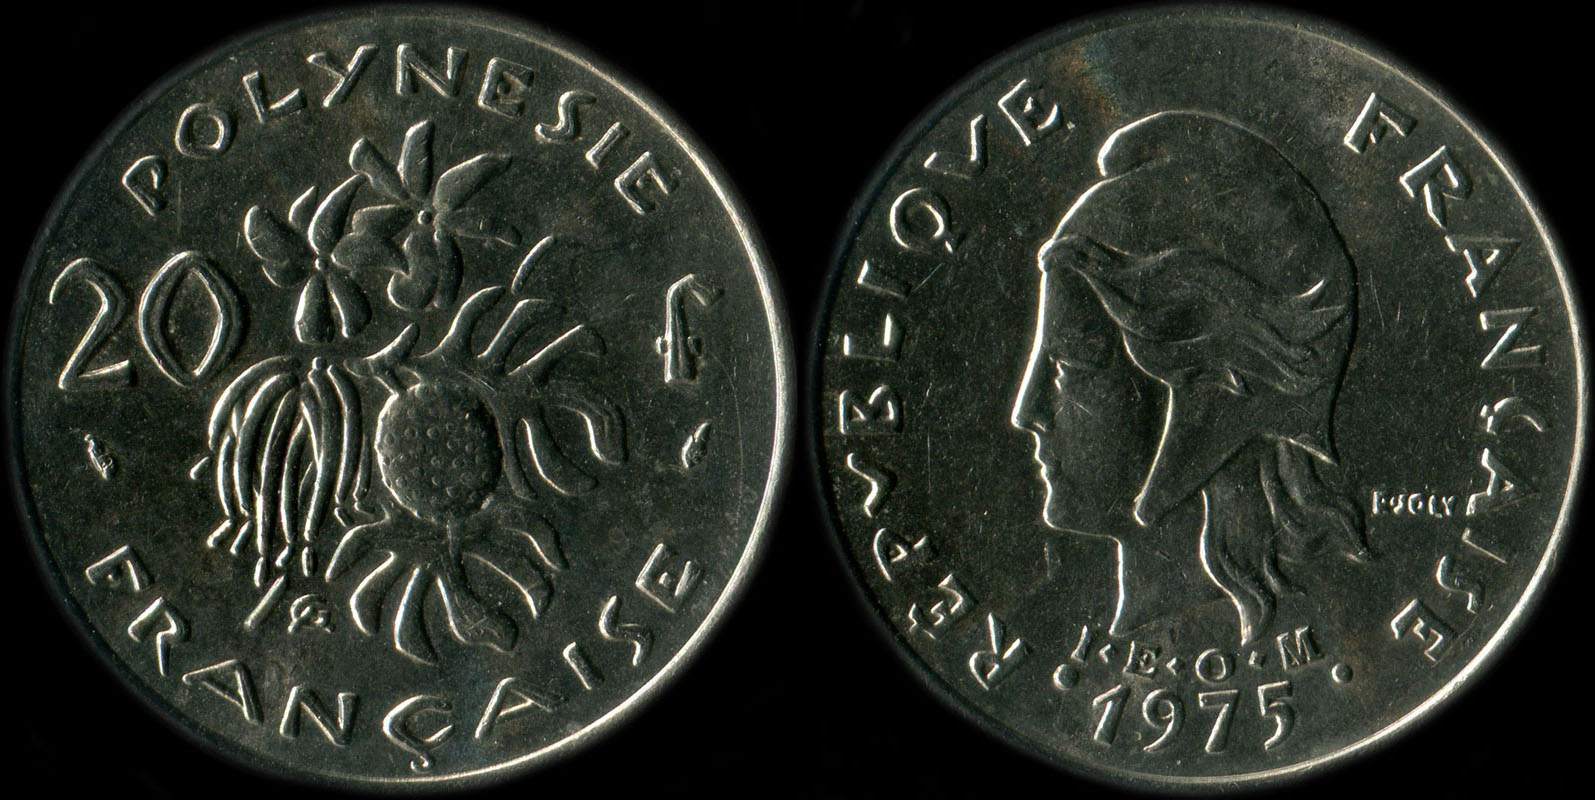 Pice de 20 francs 1975 Polynsie franaise I.E.O.M.